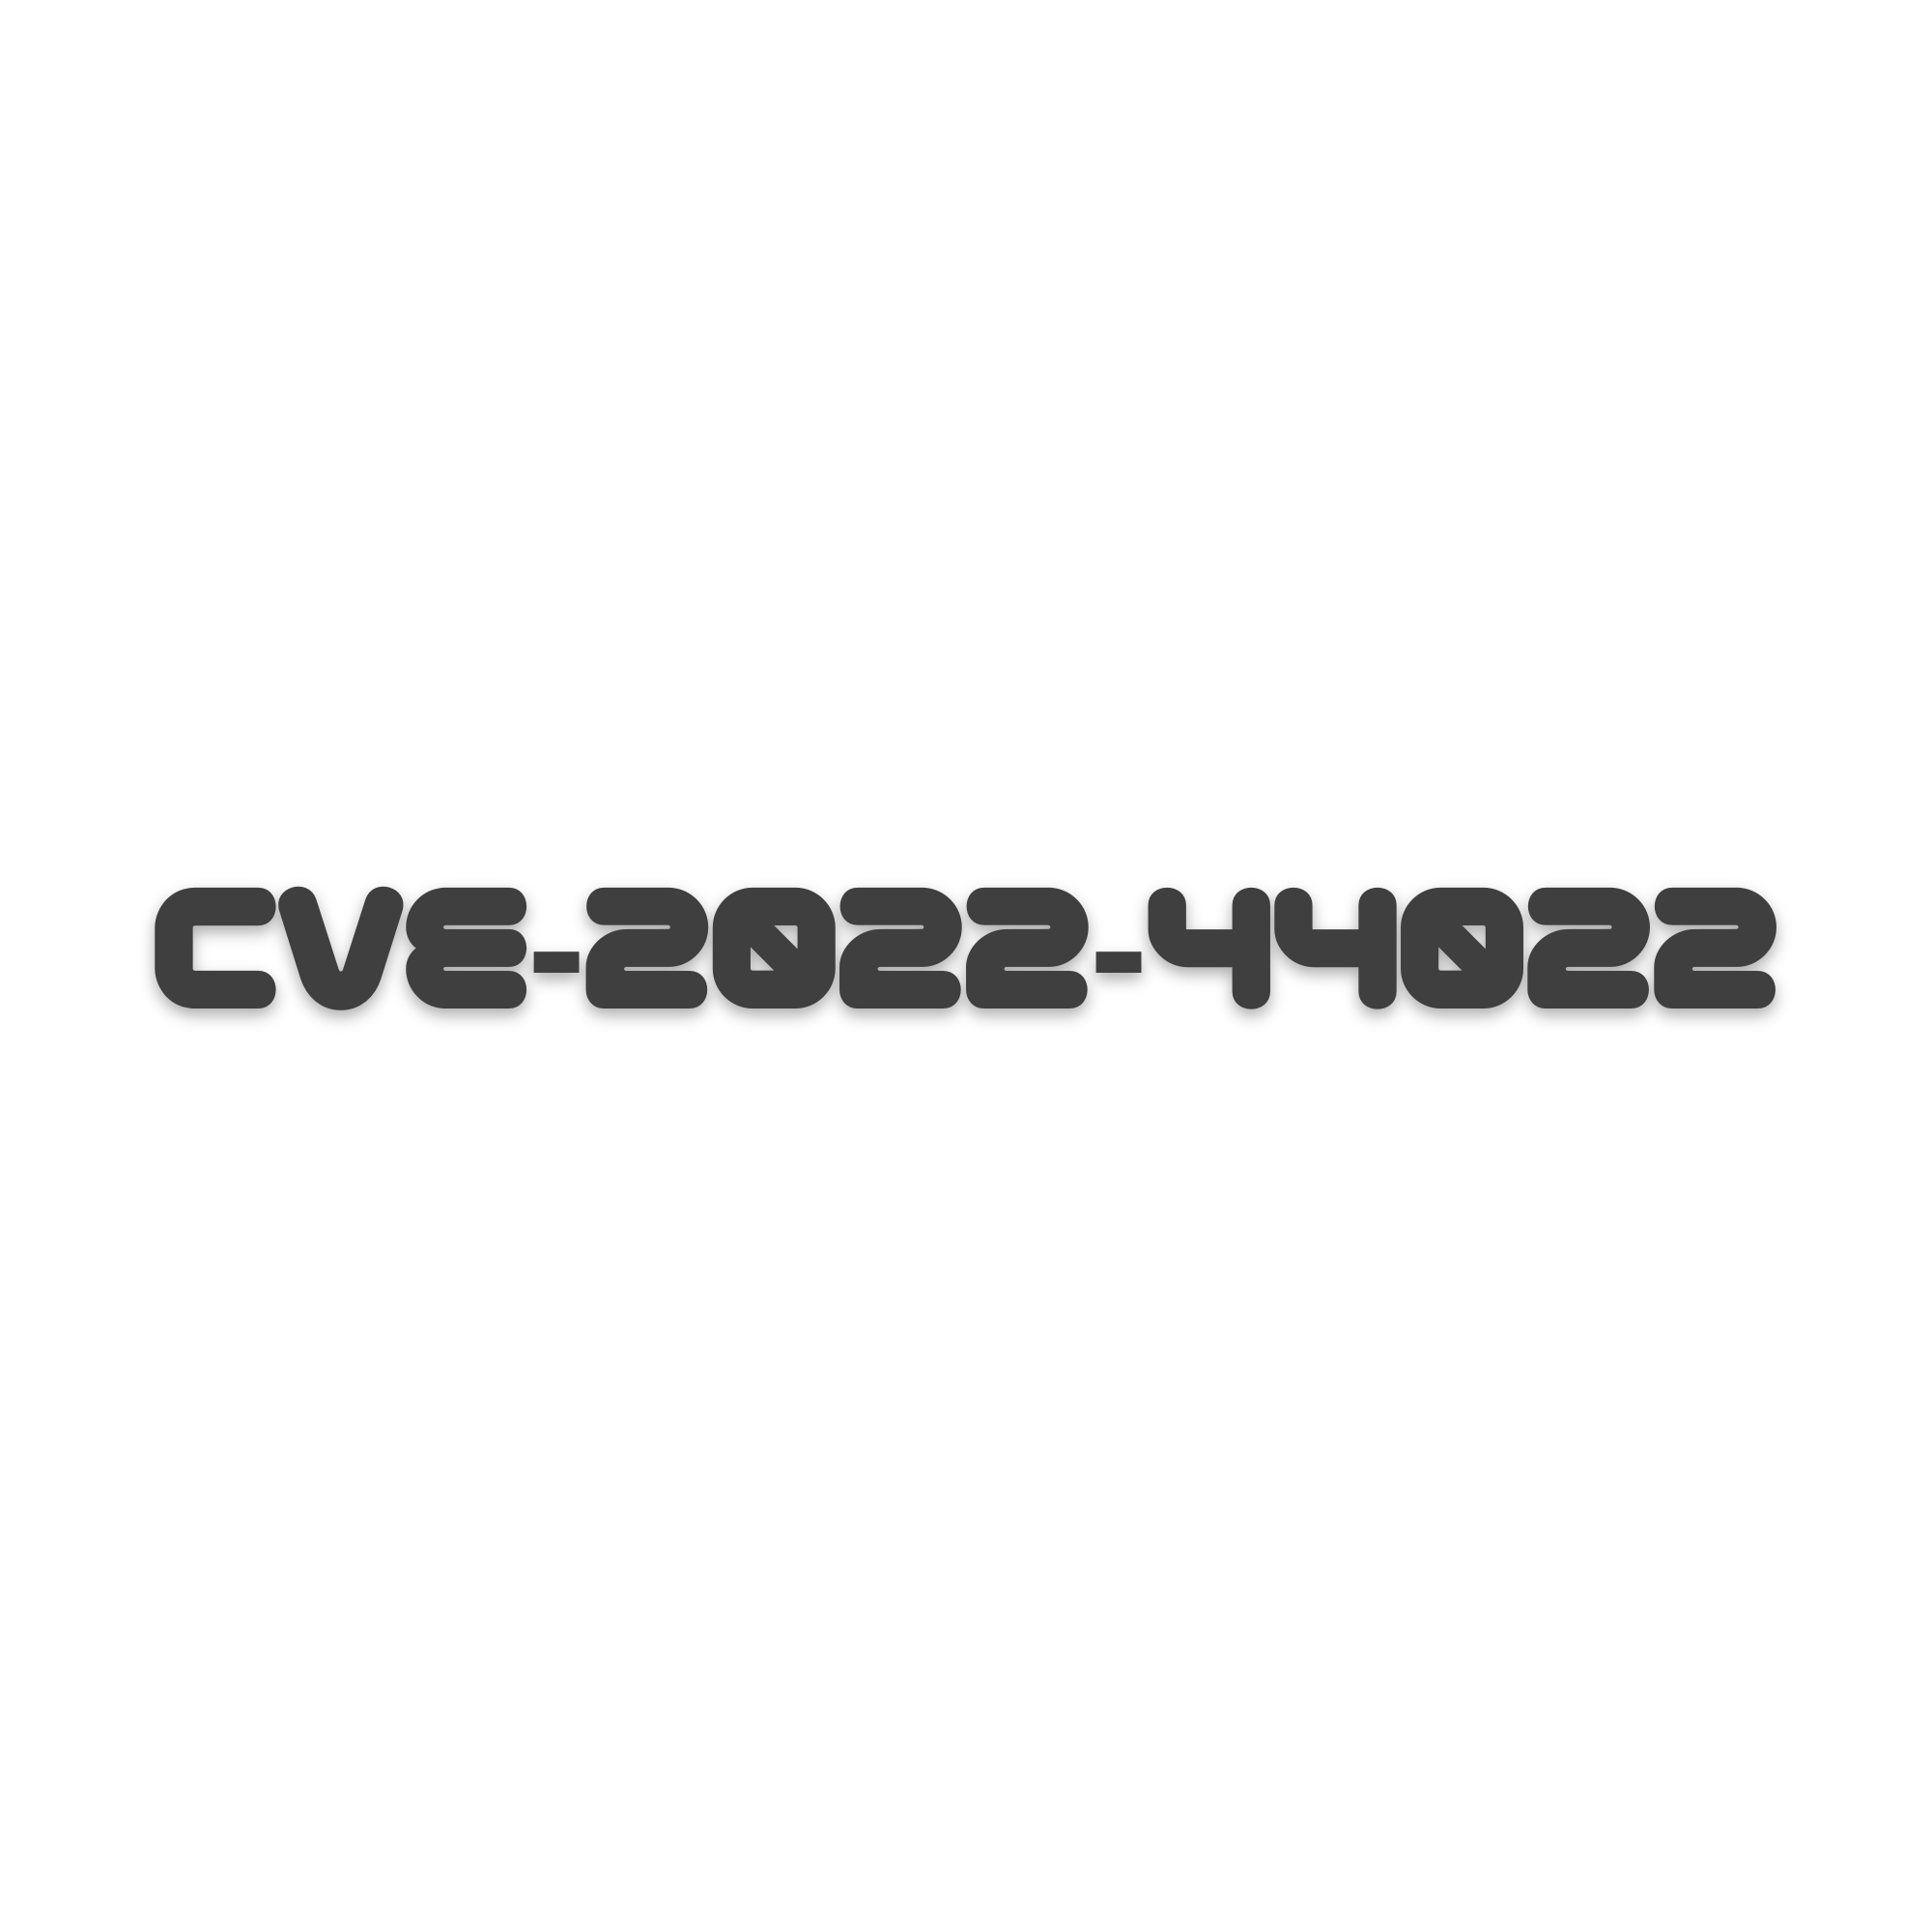 CVE-2022-44022